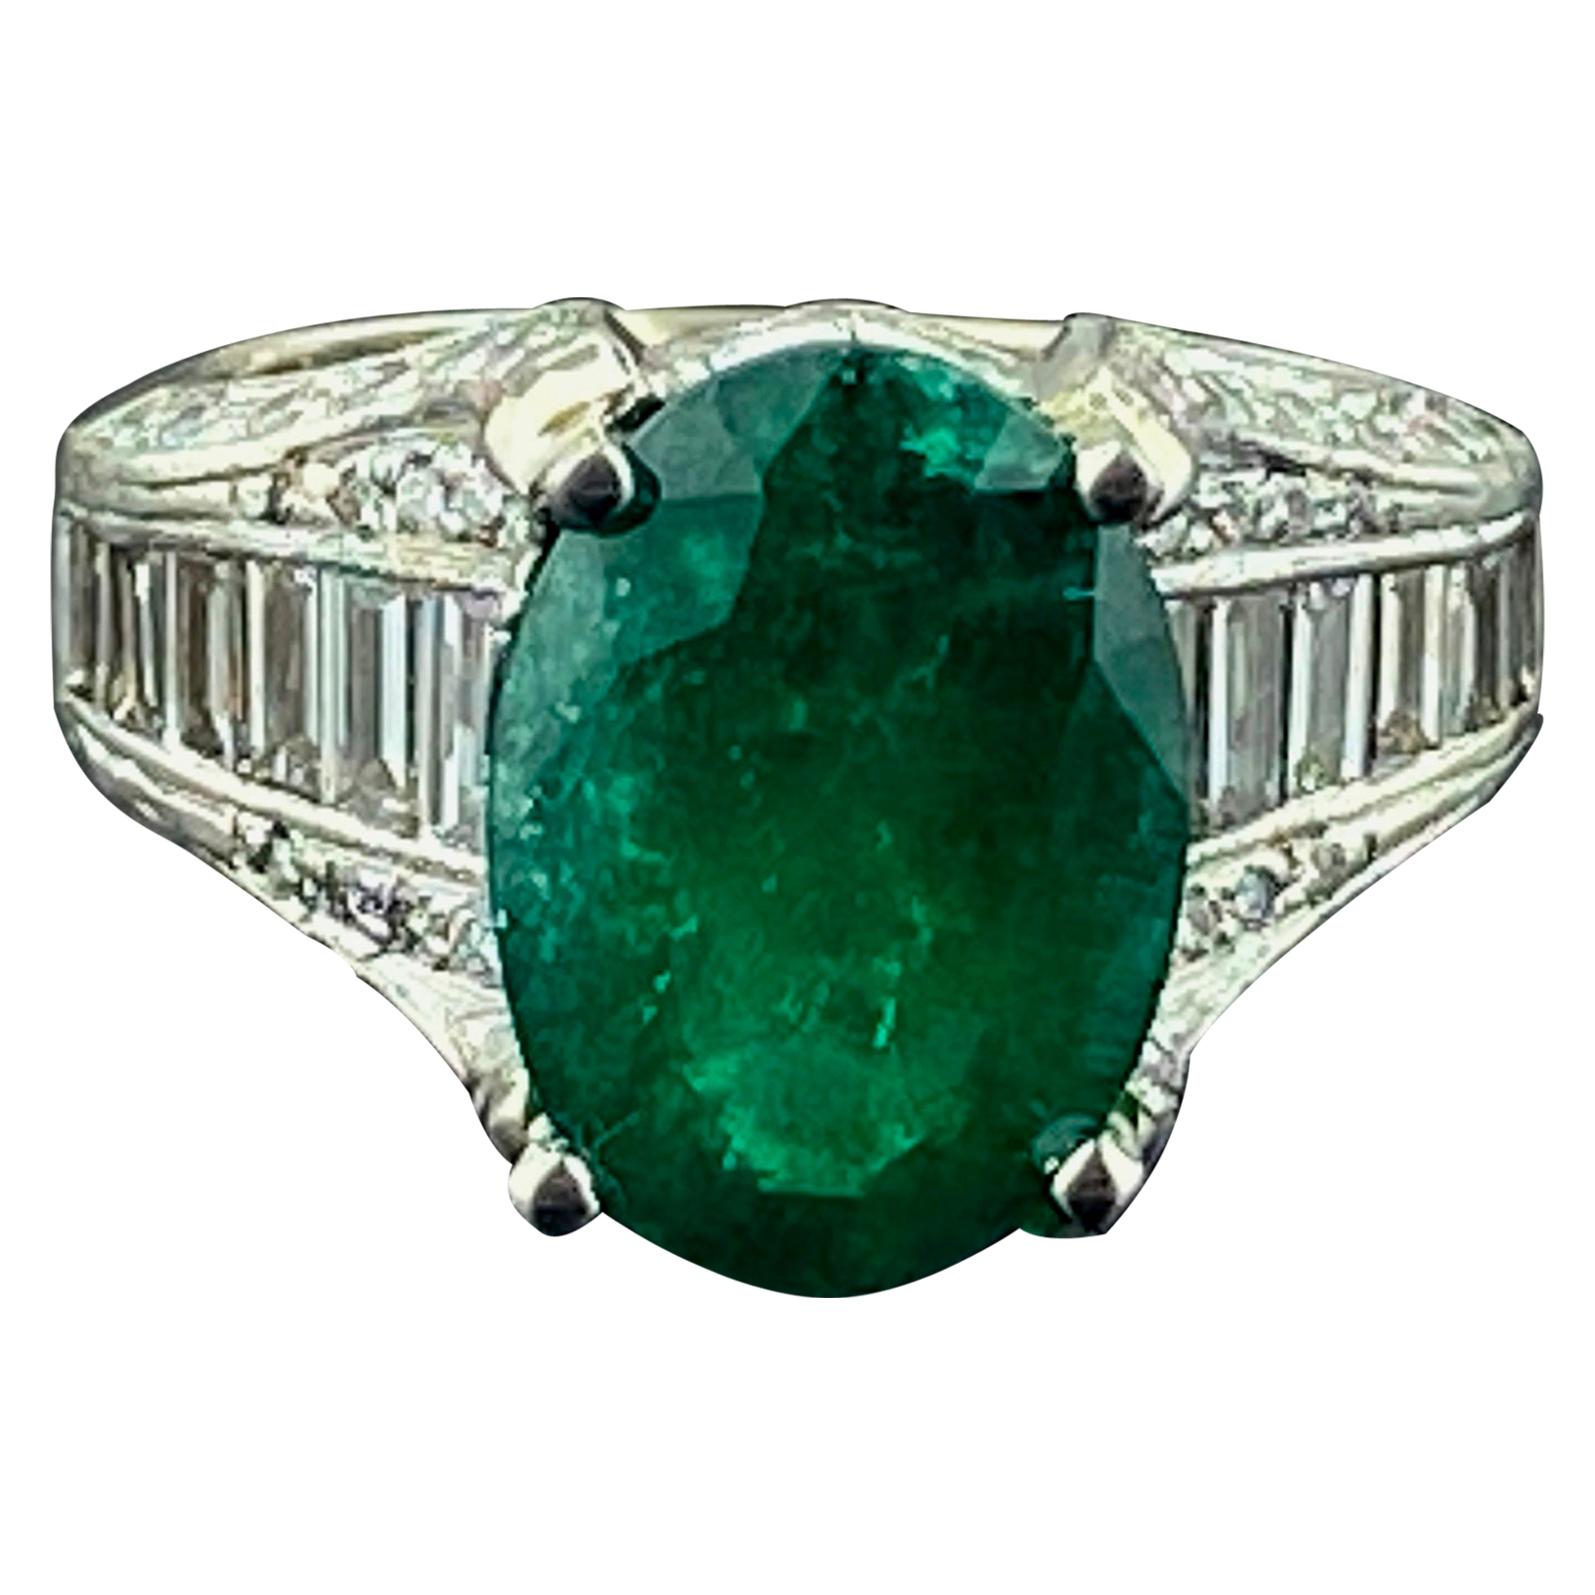 4.80 Carat Emerald and Diamond Ring in Platinum